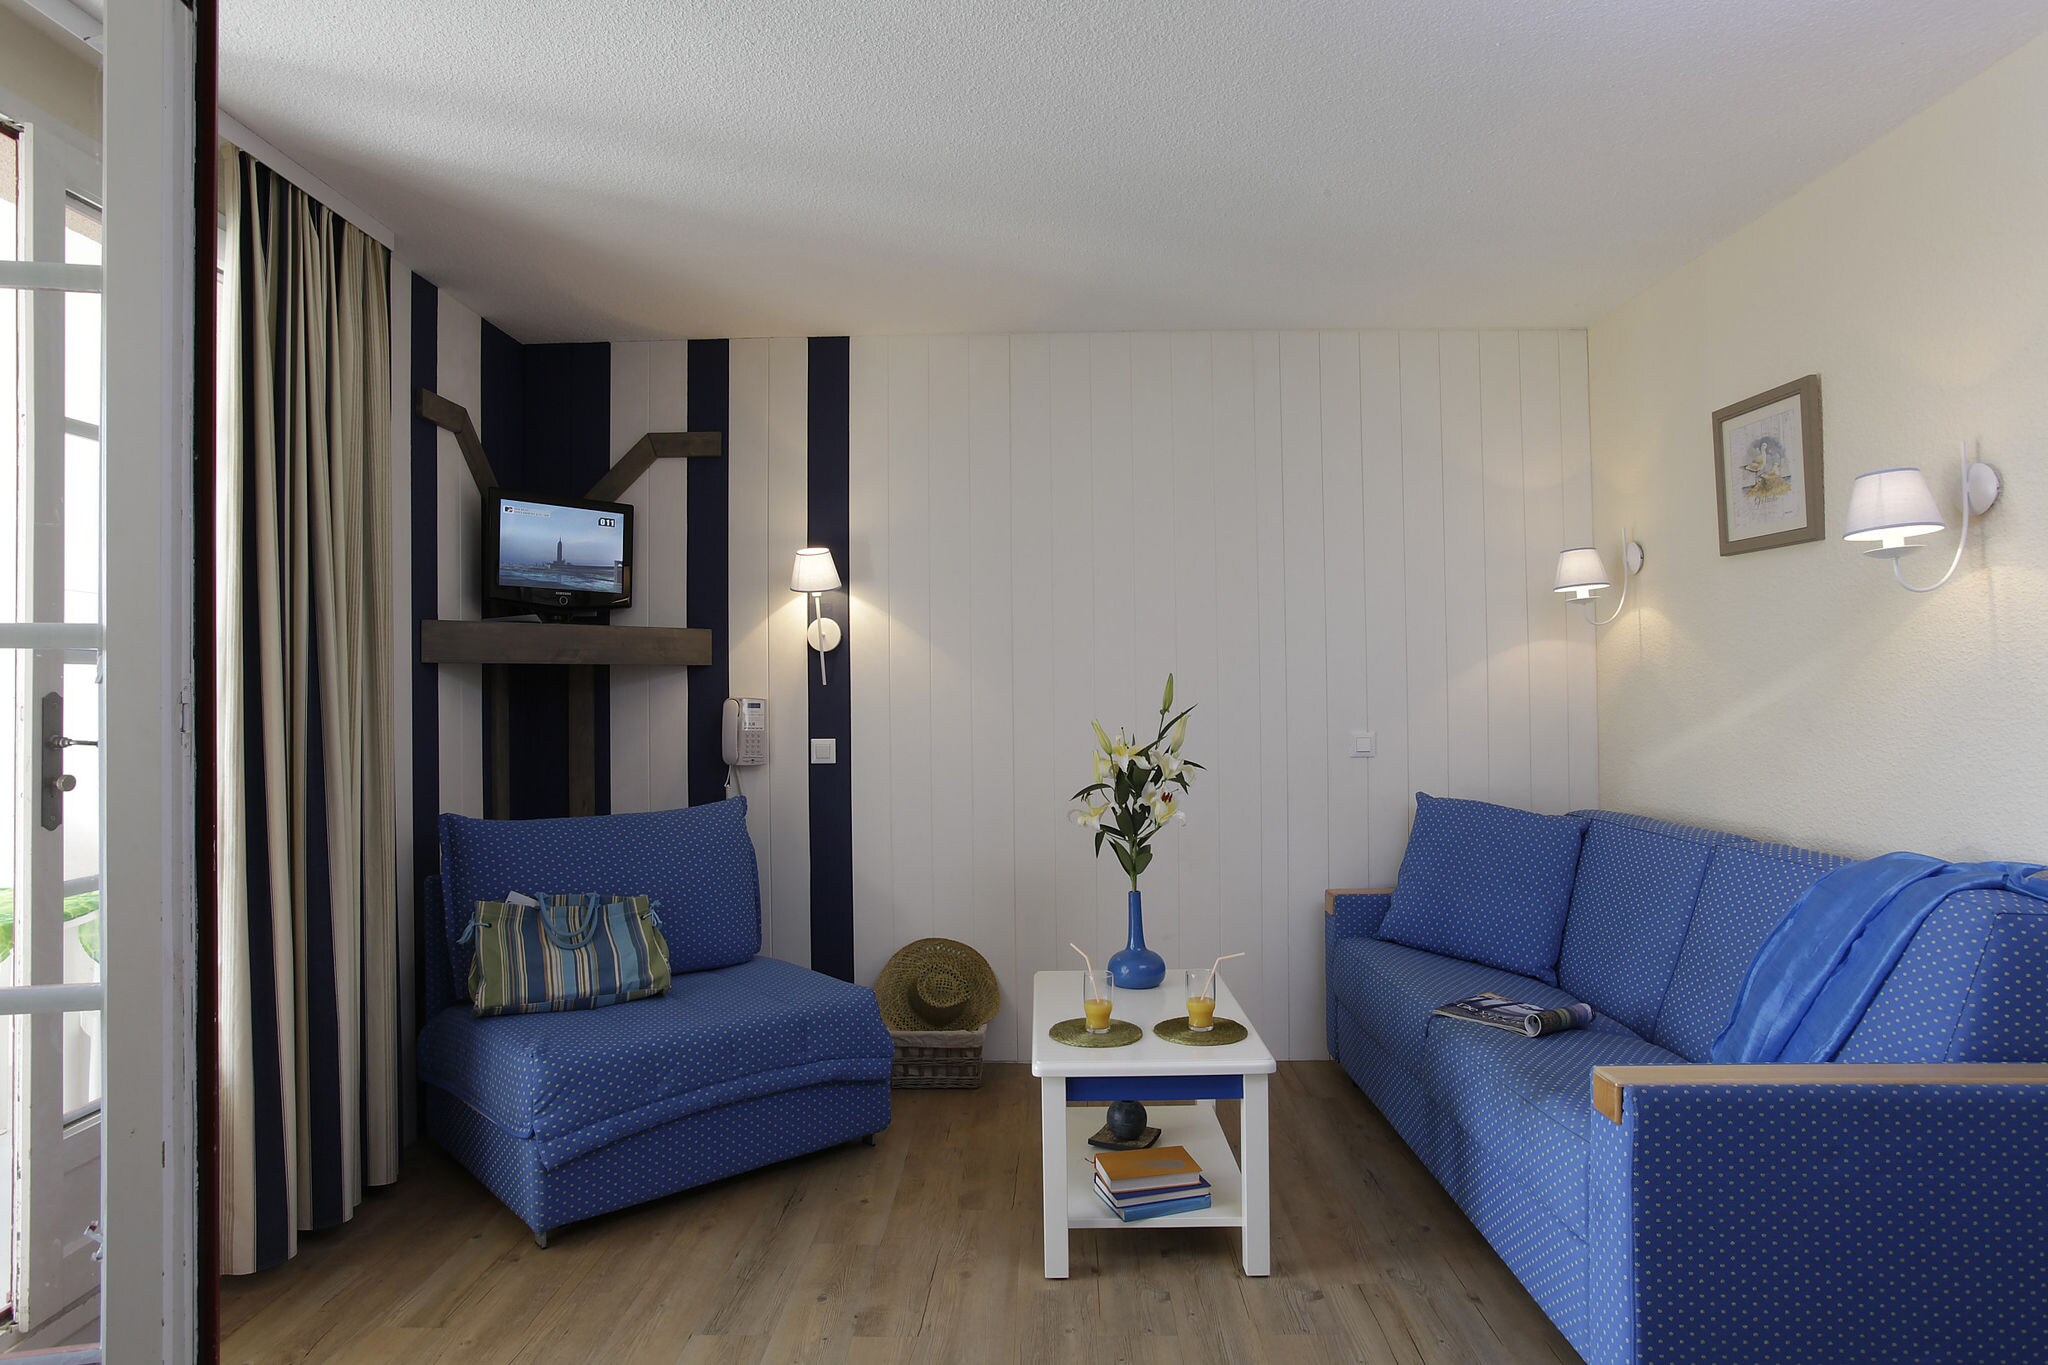 Appartement de style situé près d'un lac en Vendée